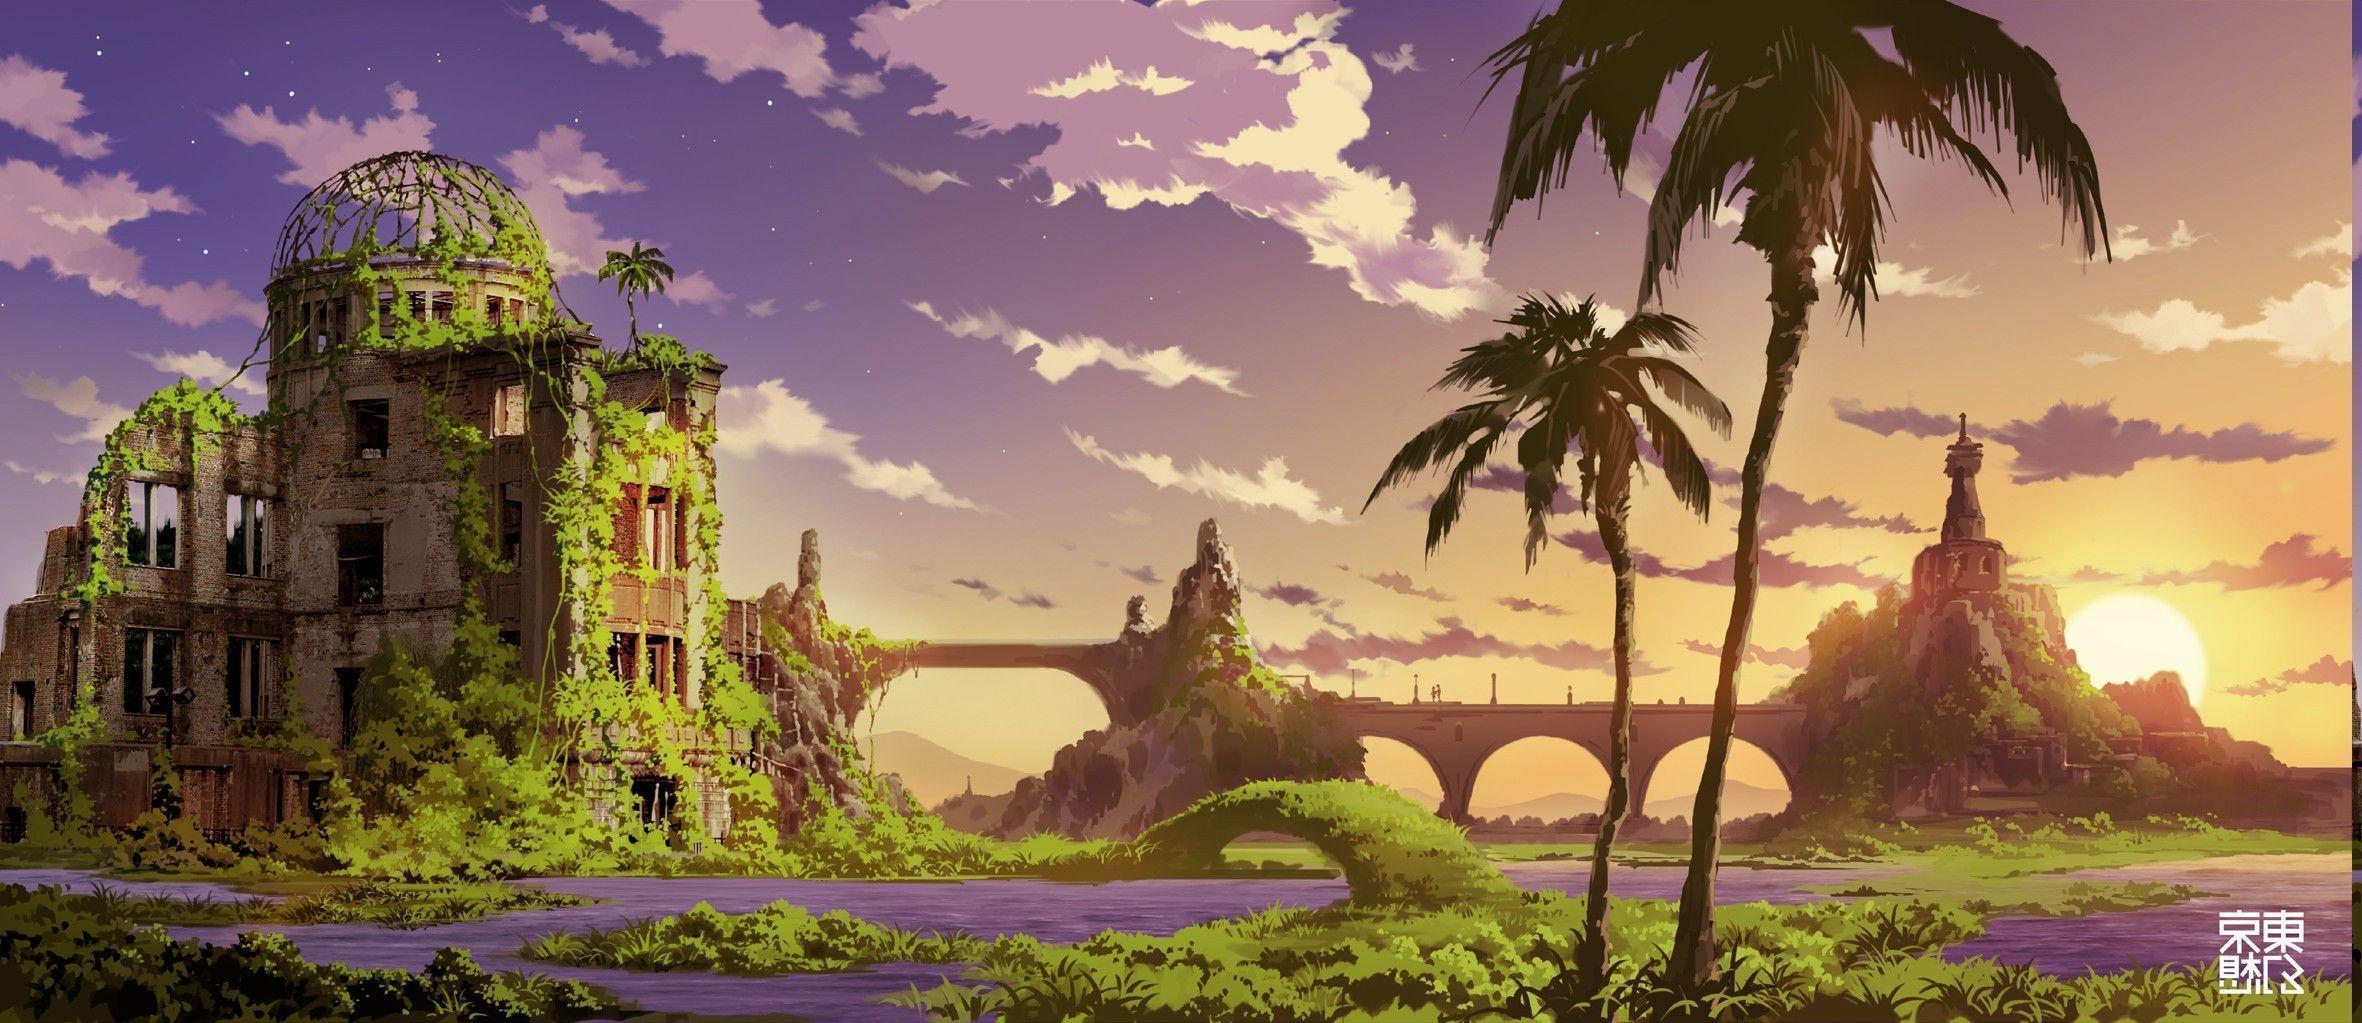 anime, Landscape Wallpaper HD / Desktop and Mobile Background